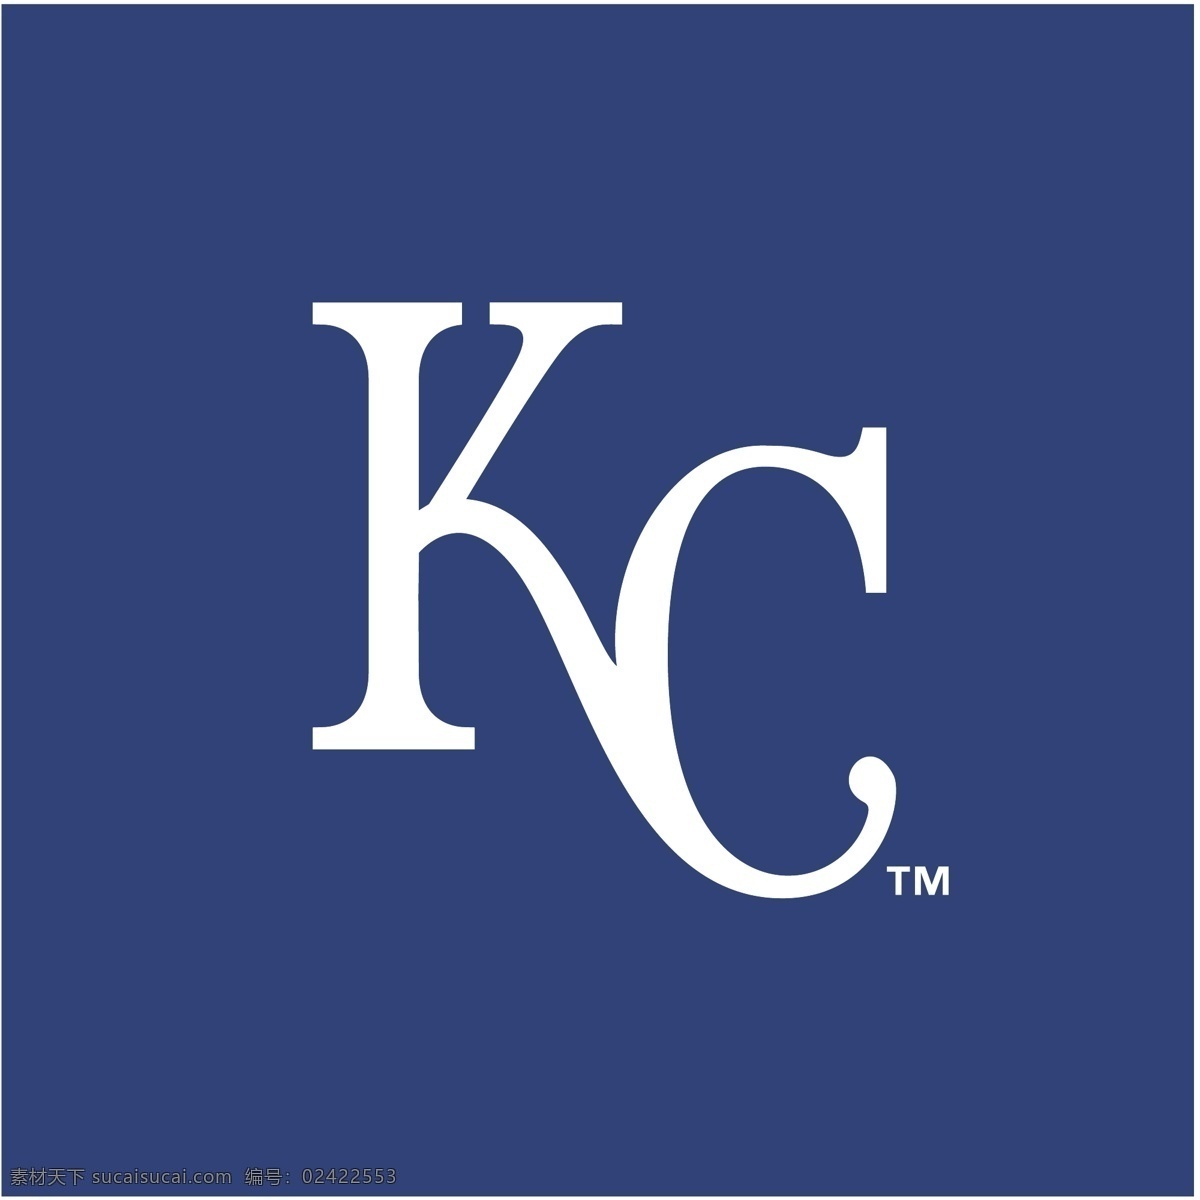 堪萨斯 市 皇家 矢量标志下载 免费矢量标识 商标 品牌标识 标识 矢量 免费 品牌 公司 青色 天蓝色